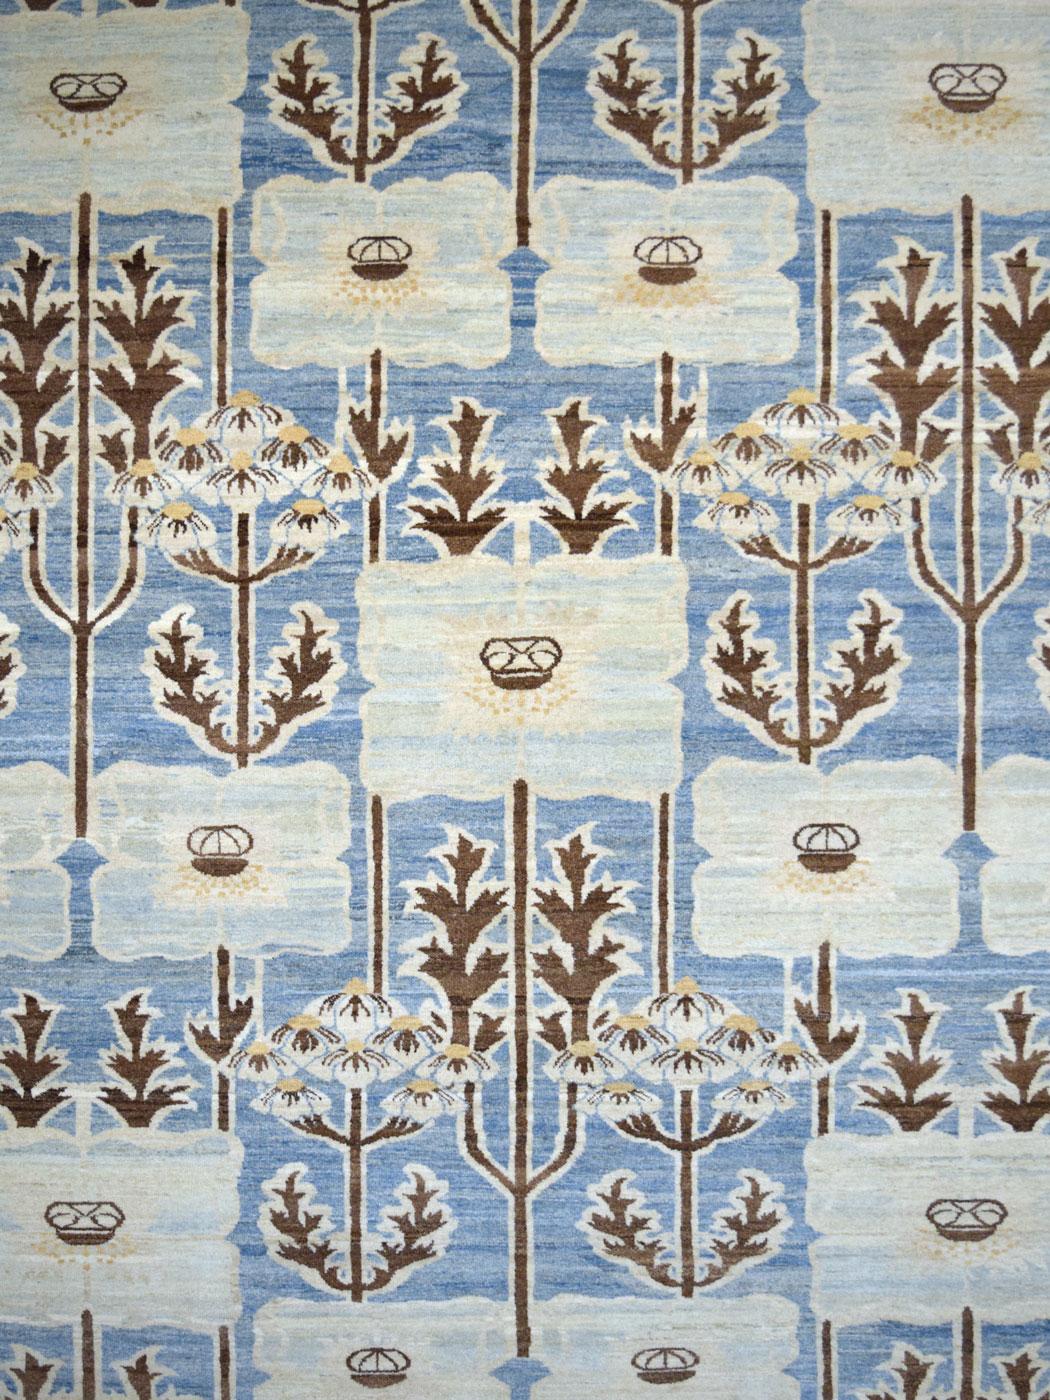 Dieser handgeknüpfte Teppich mit dem Titel Magnolia, der ein lebendiges Gartenthema darstellt, misst 5'11